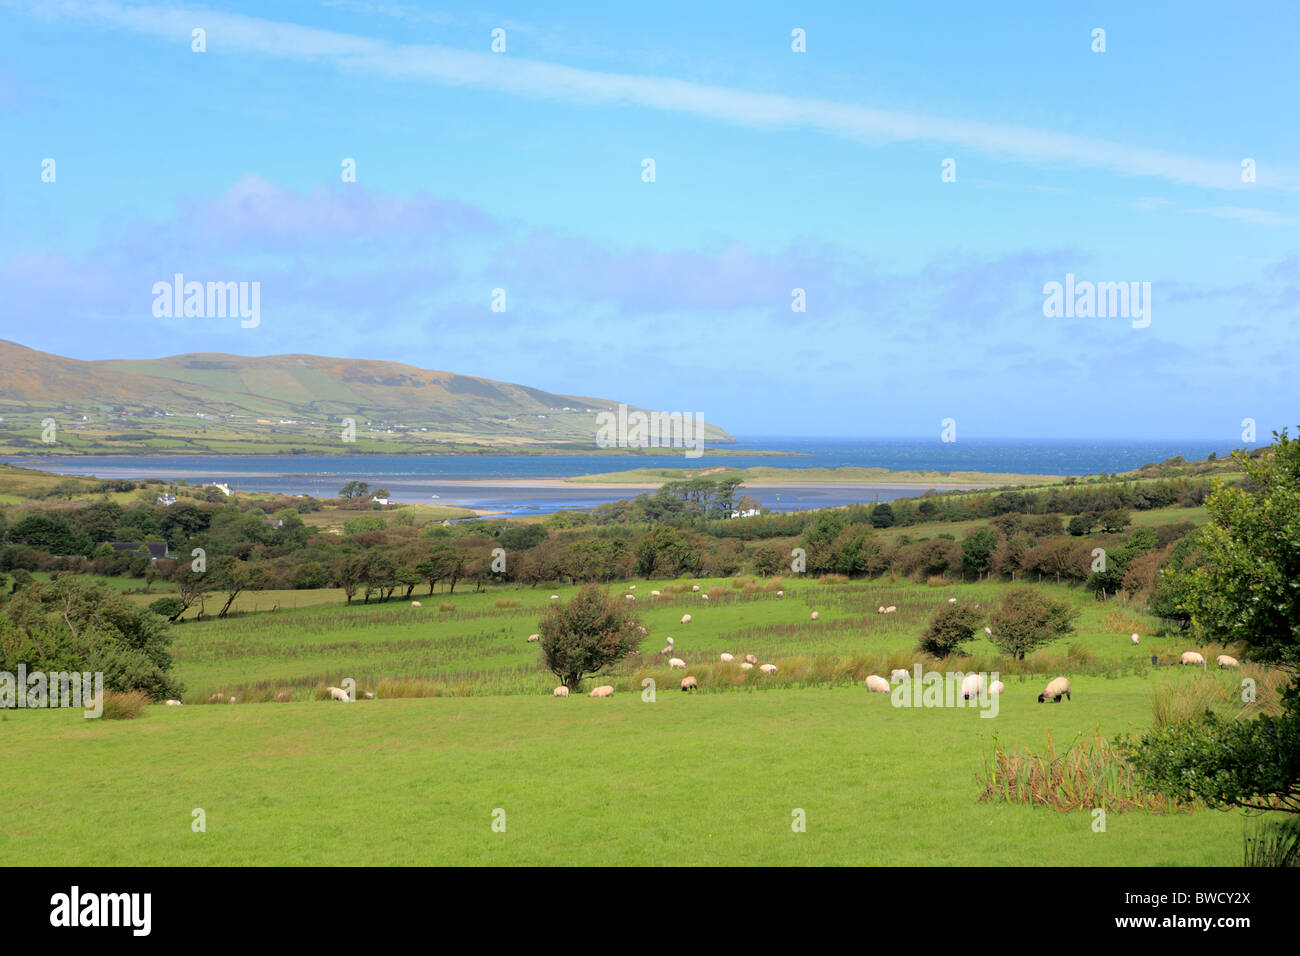 Brandon bay, Dingle peninsula, Kerry county, Ireland Stock Photo